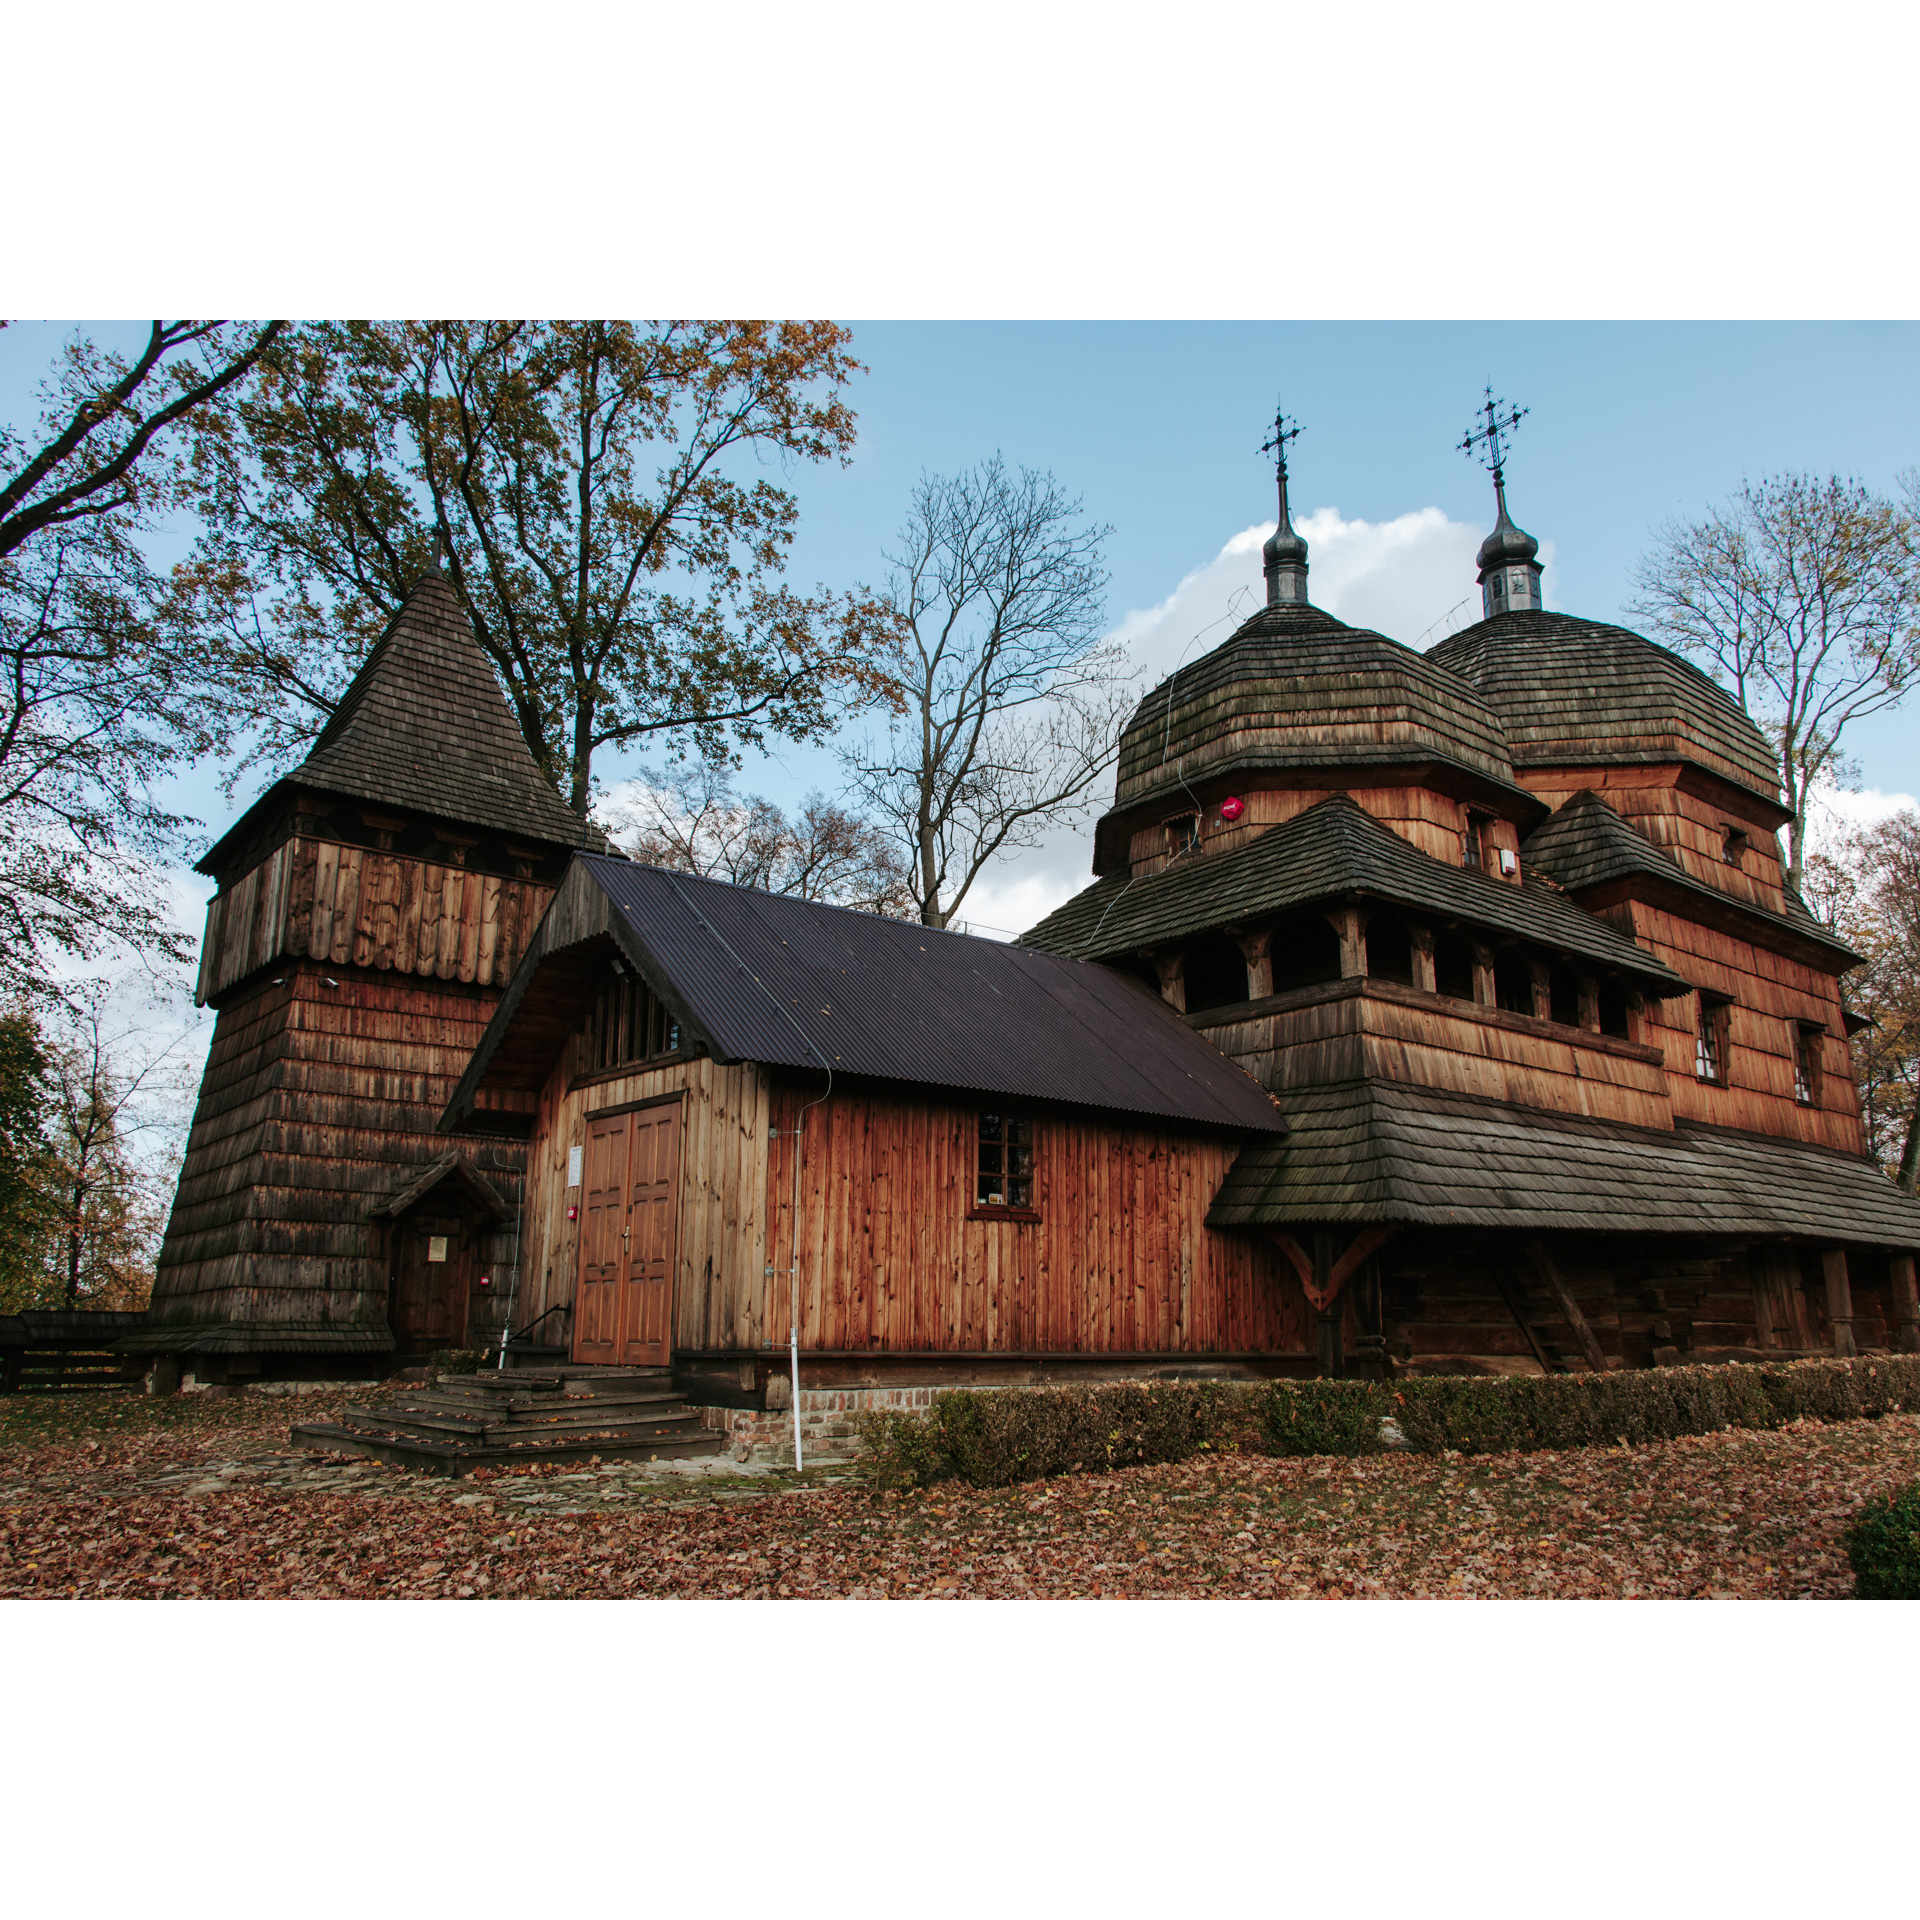 Drewniany, zabytkowy kościół z 2 wieżami z kopulastym dachem i jedną wieżą ze spiczastym dachem